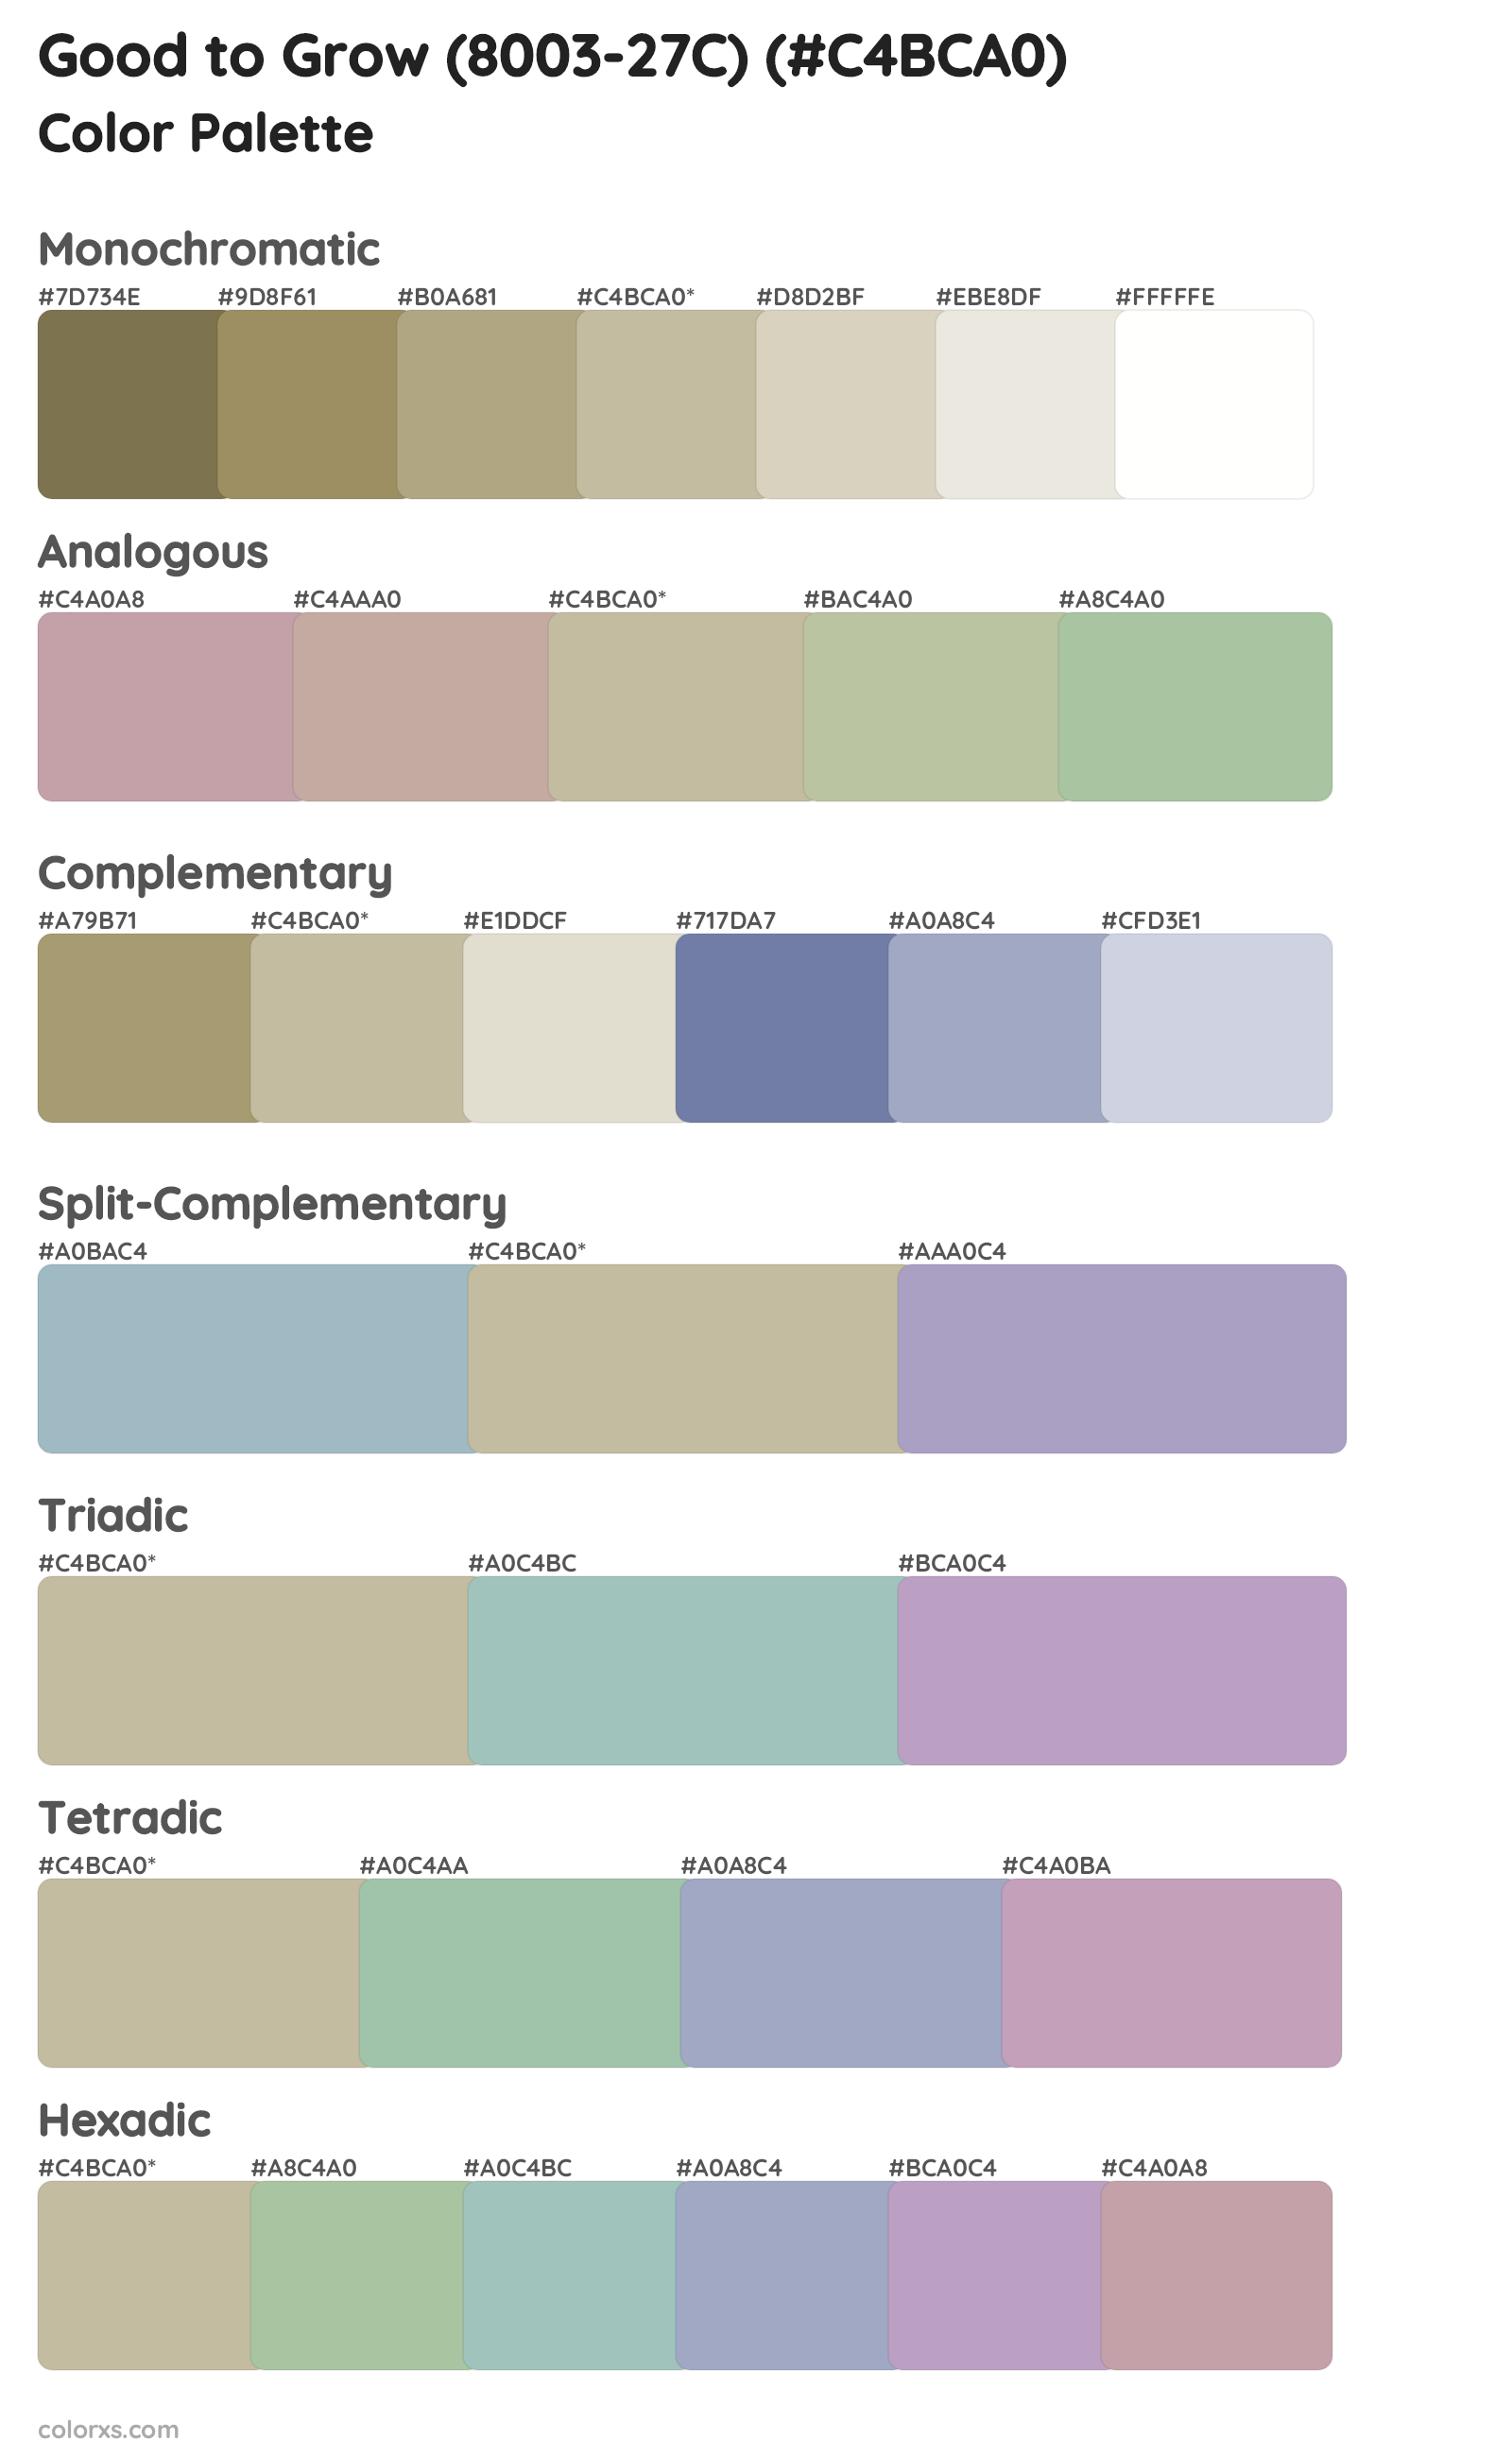 Good to Grow (8003-27C) Color Scheme Palettes